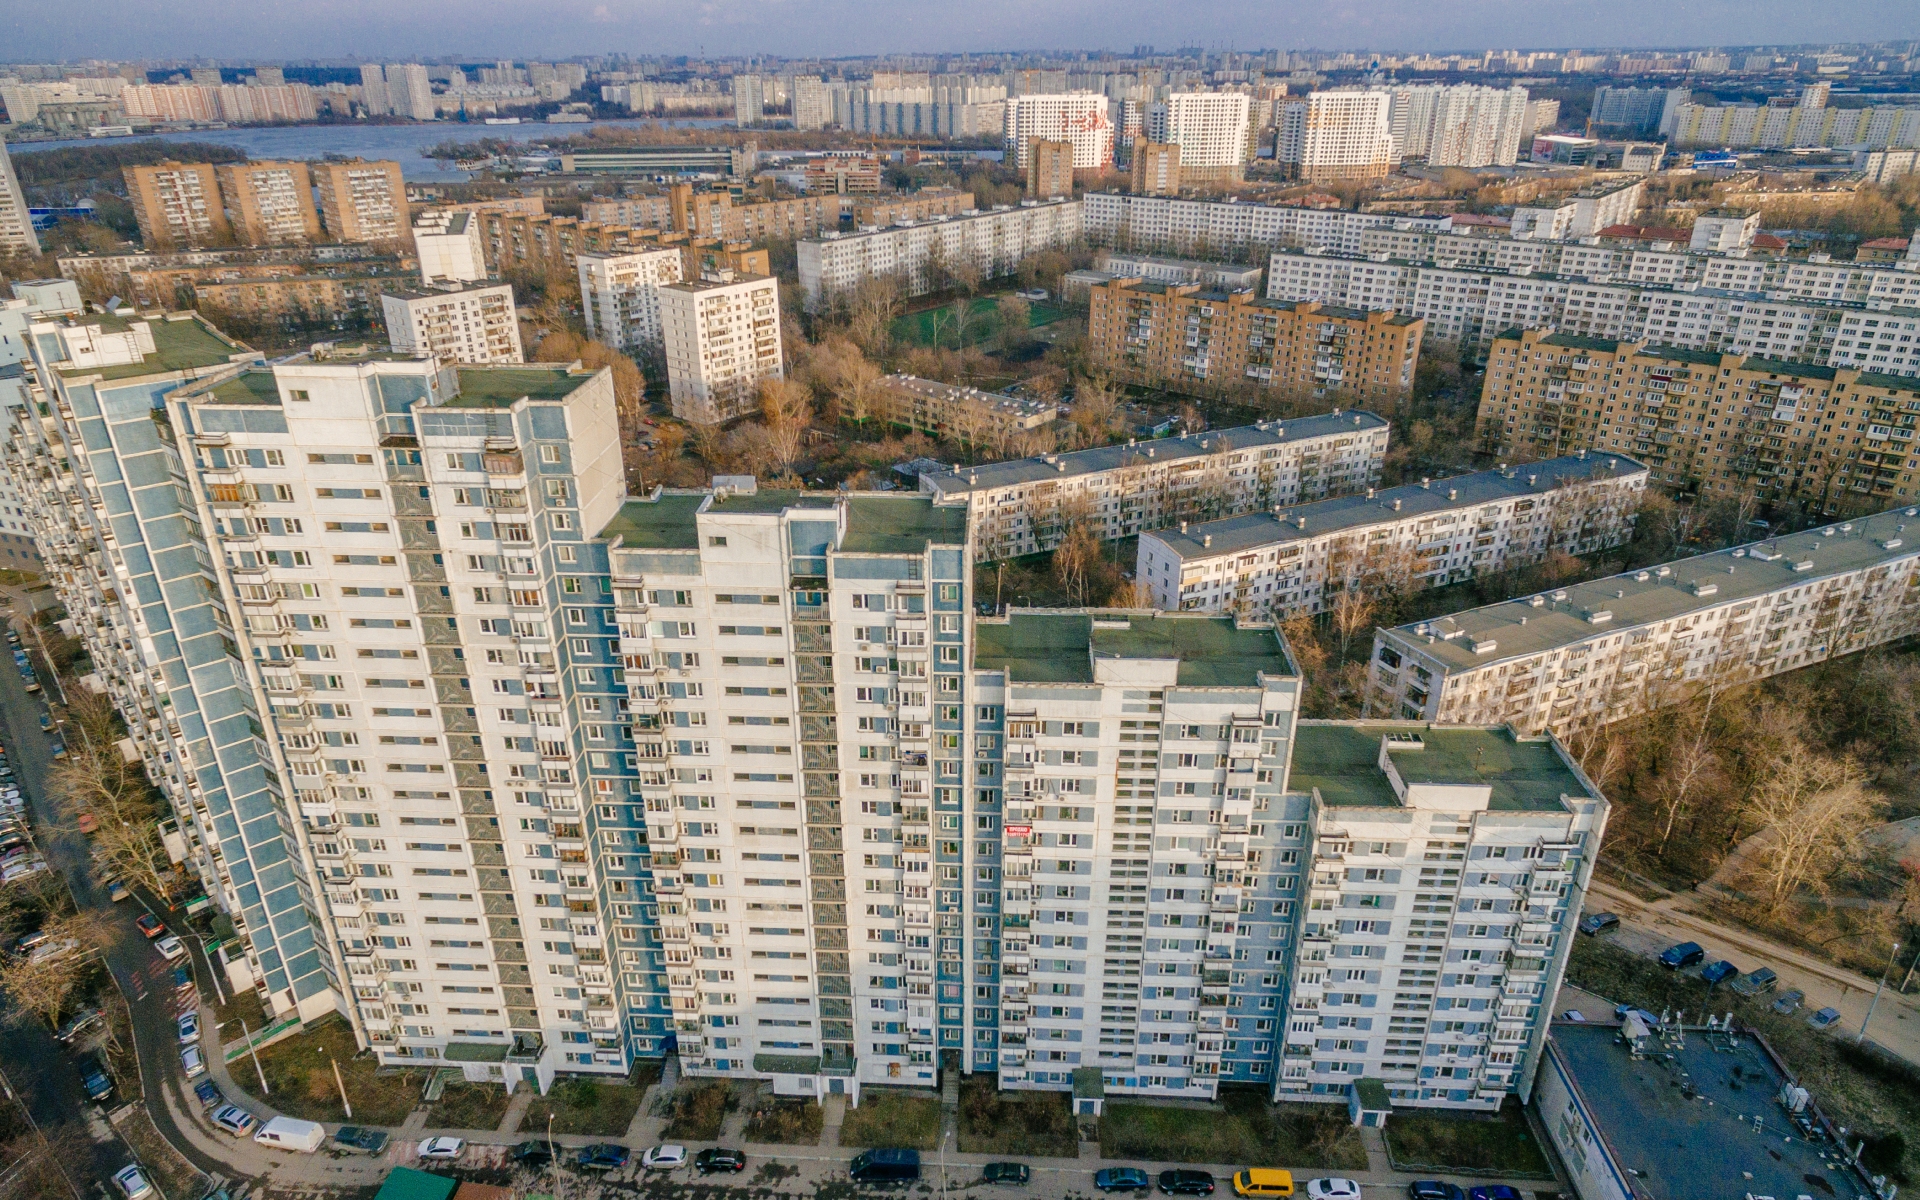 Всего с начала 2021 года в единый реестр недвижимости Москвы внесены сведения о 297 многоквартирных домах общей площадью 9 млн кв. м